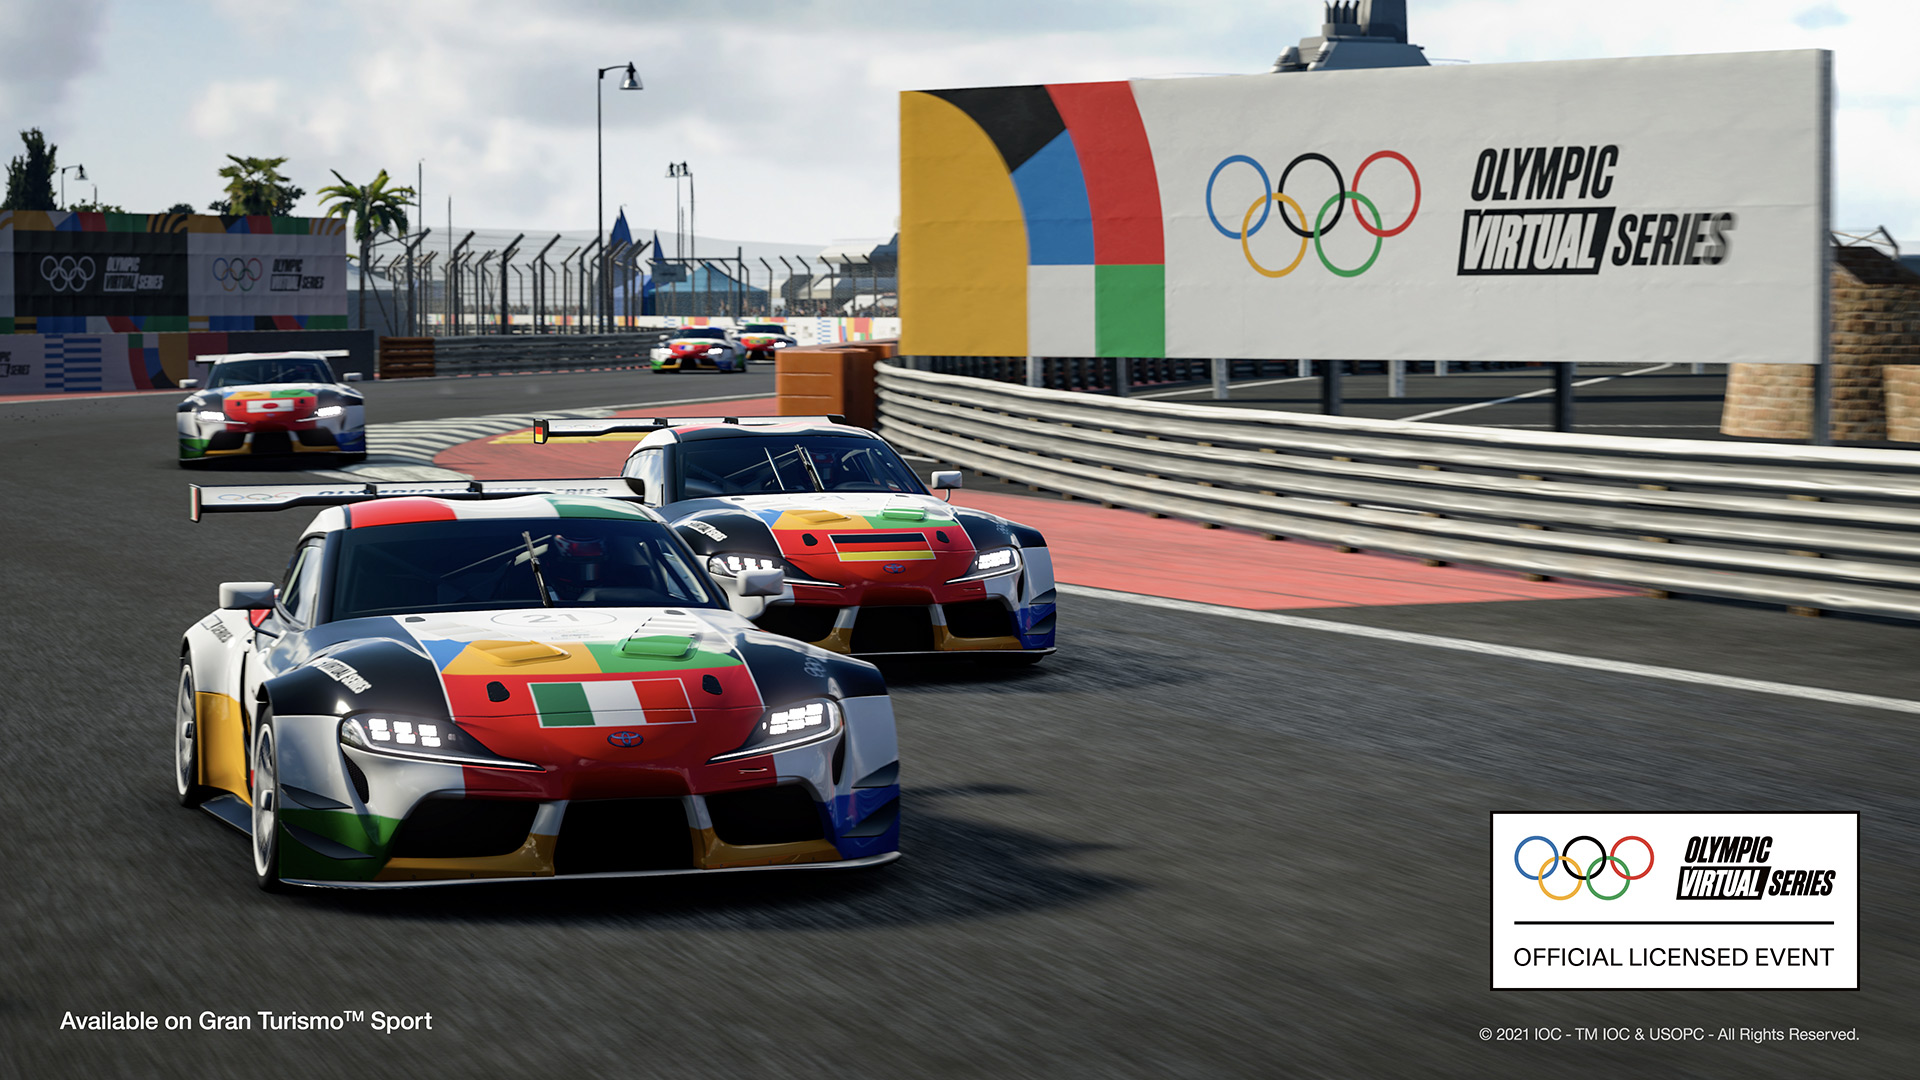 More information about "Gran Turismo Sport: al via oggi la Olympic Virtual Series, trailer di lancio"